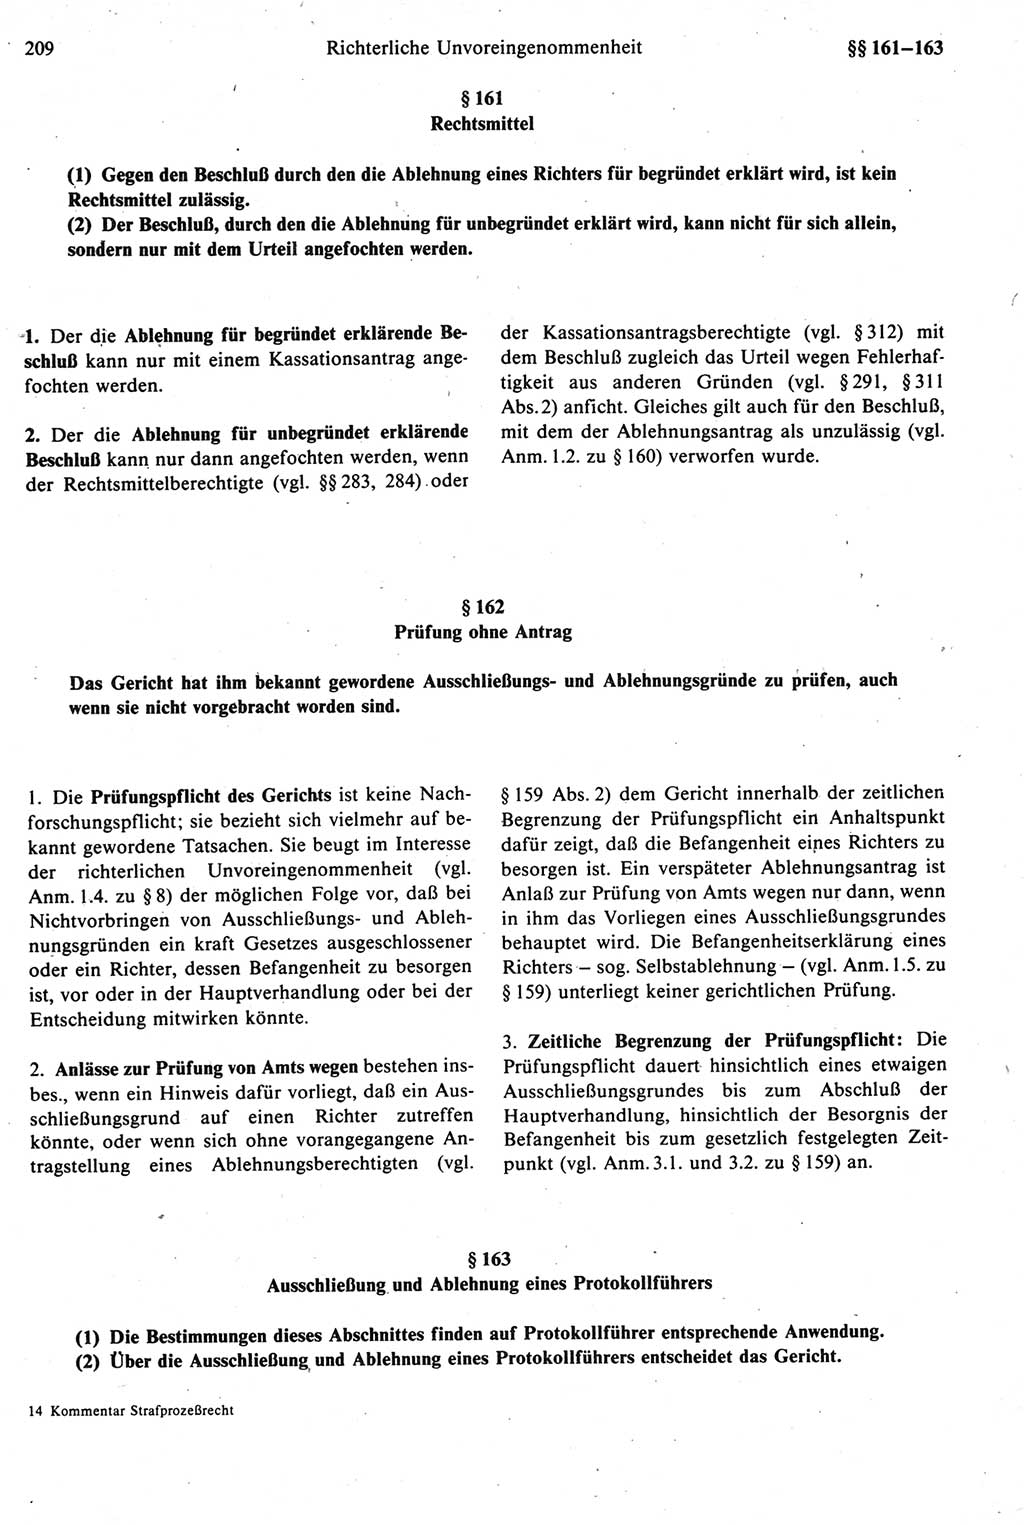 Strafprozeßrecht der DDR [Deutsche Demokratische Republik], Kommentar zur Strafprozeßordnung (StPO) 1987, Seite 209 (Strafprozeßr. DDR Komm. StPO 1987, S. 209)